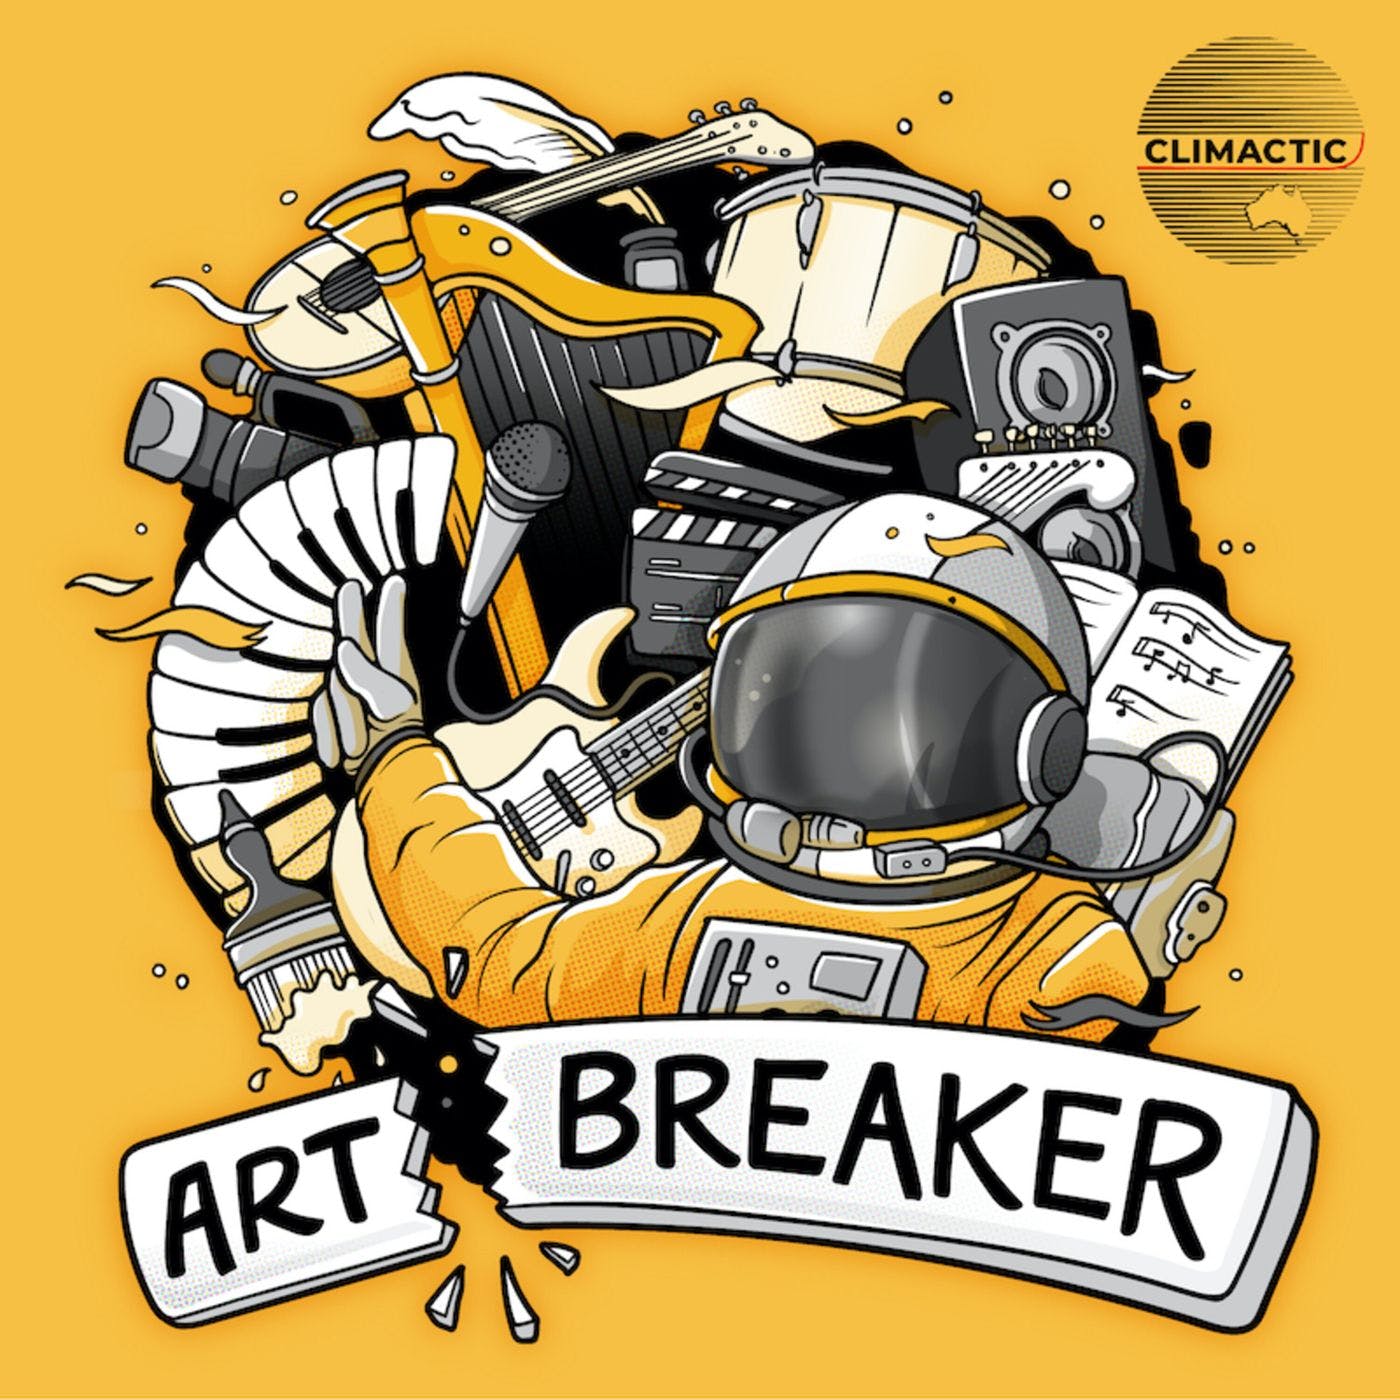 Art Breaker's artwork